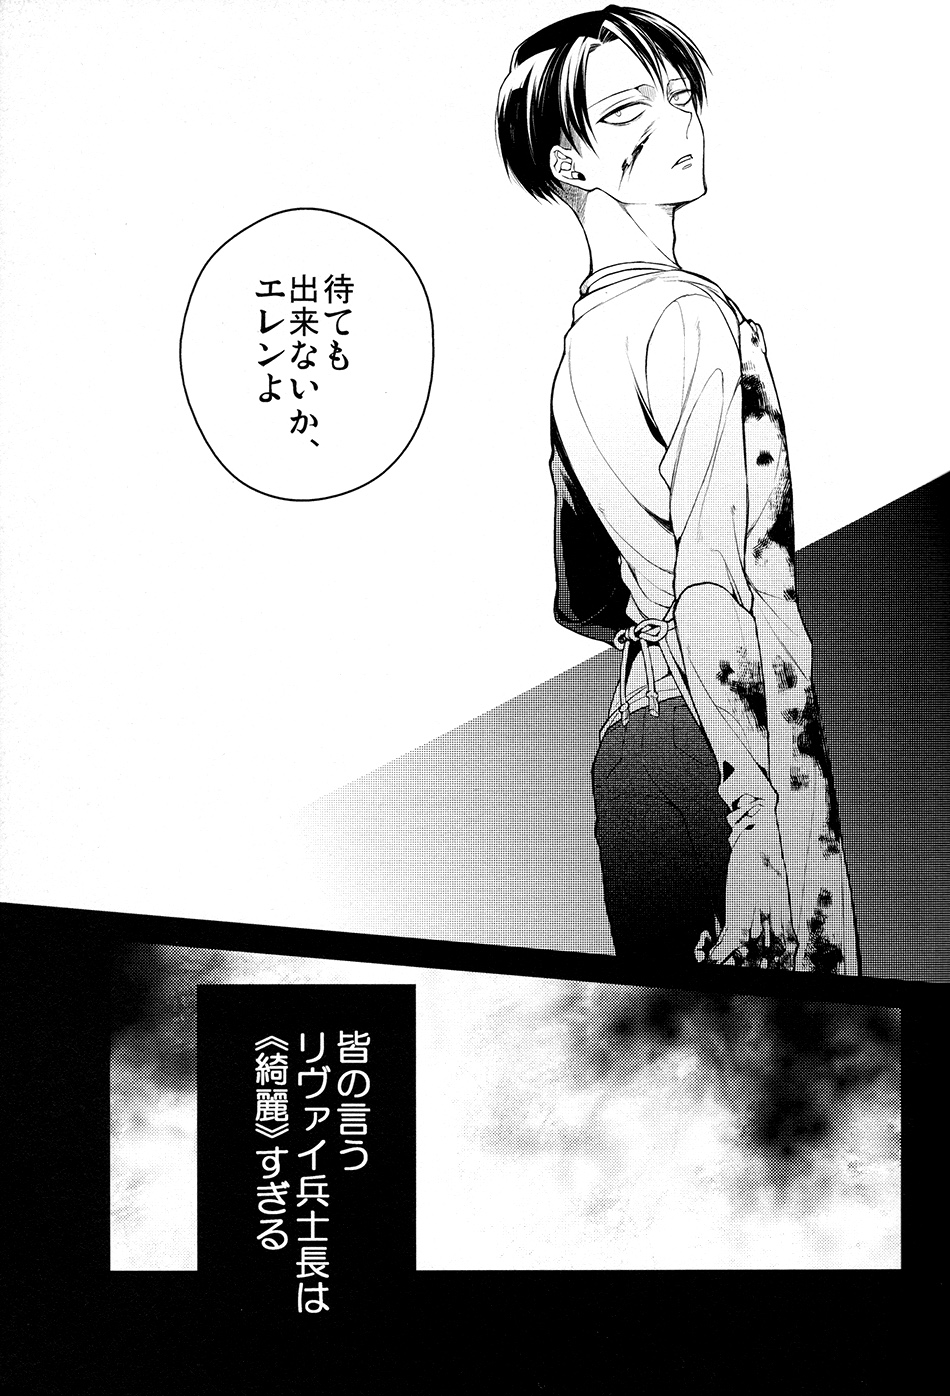 (Kibou no Tsubasa 2) [6109 (Kirishiki Tokico)] MAD ALL ROUNDER SENSITIVE (Shingeki no Kyojin) (希望の翼2) [6109 (桐式トキコ)] マッドオールラウンダーセンシティブ (進撃の巨人)